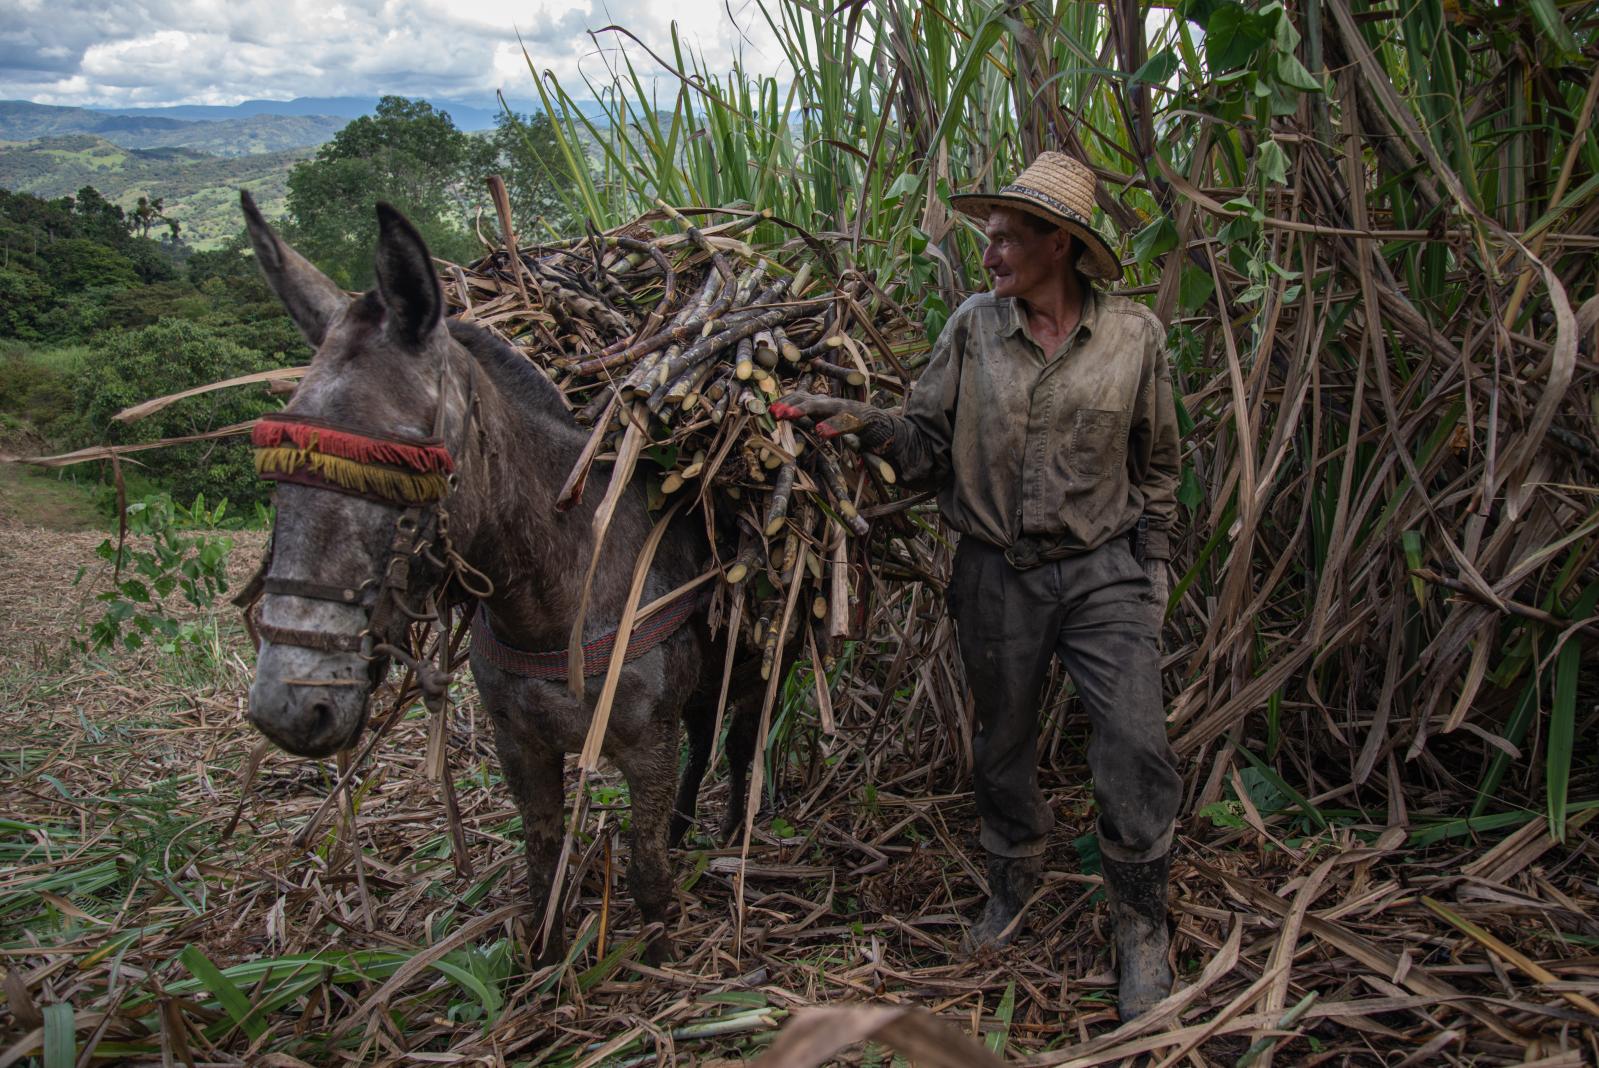 SINGLES - Sugar cane harvester in Boyacá, Colombia.